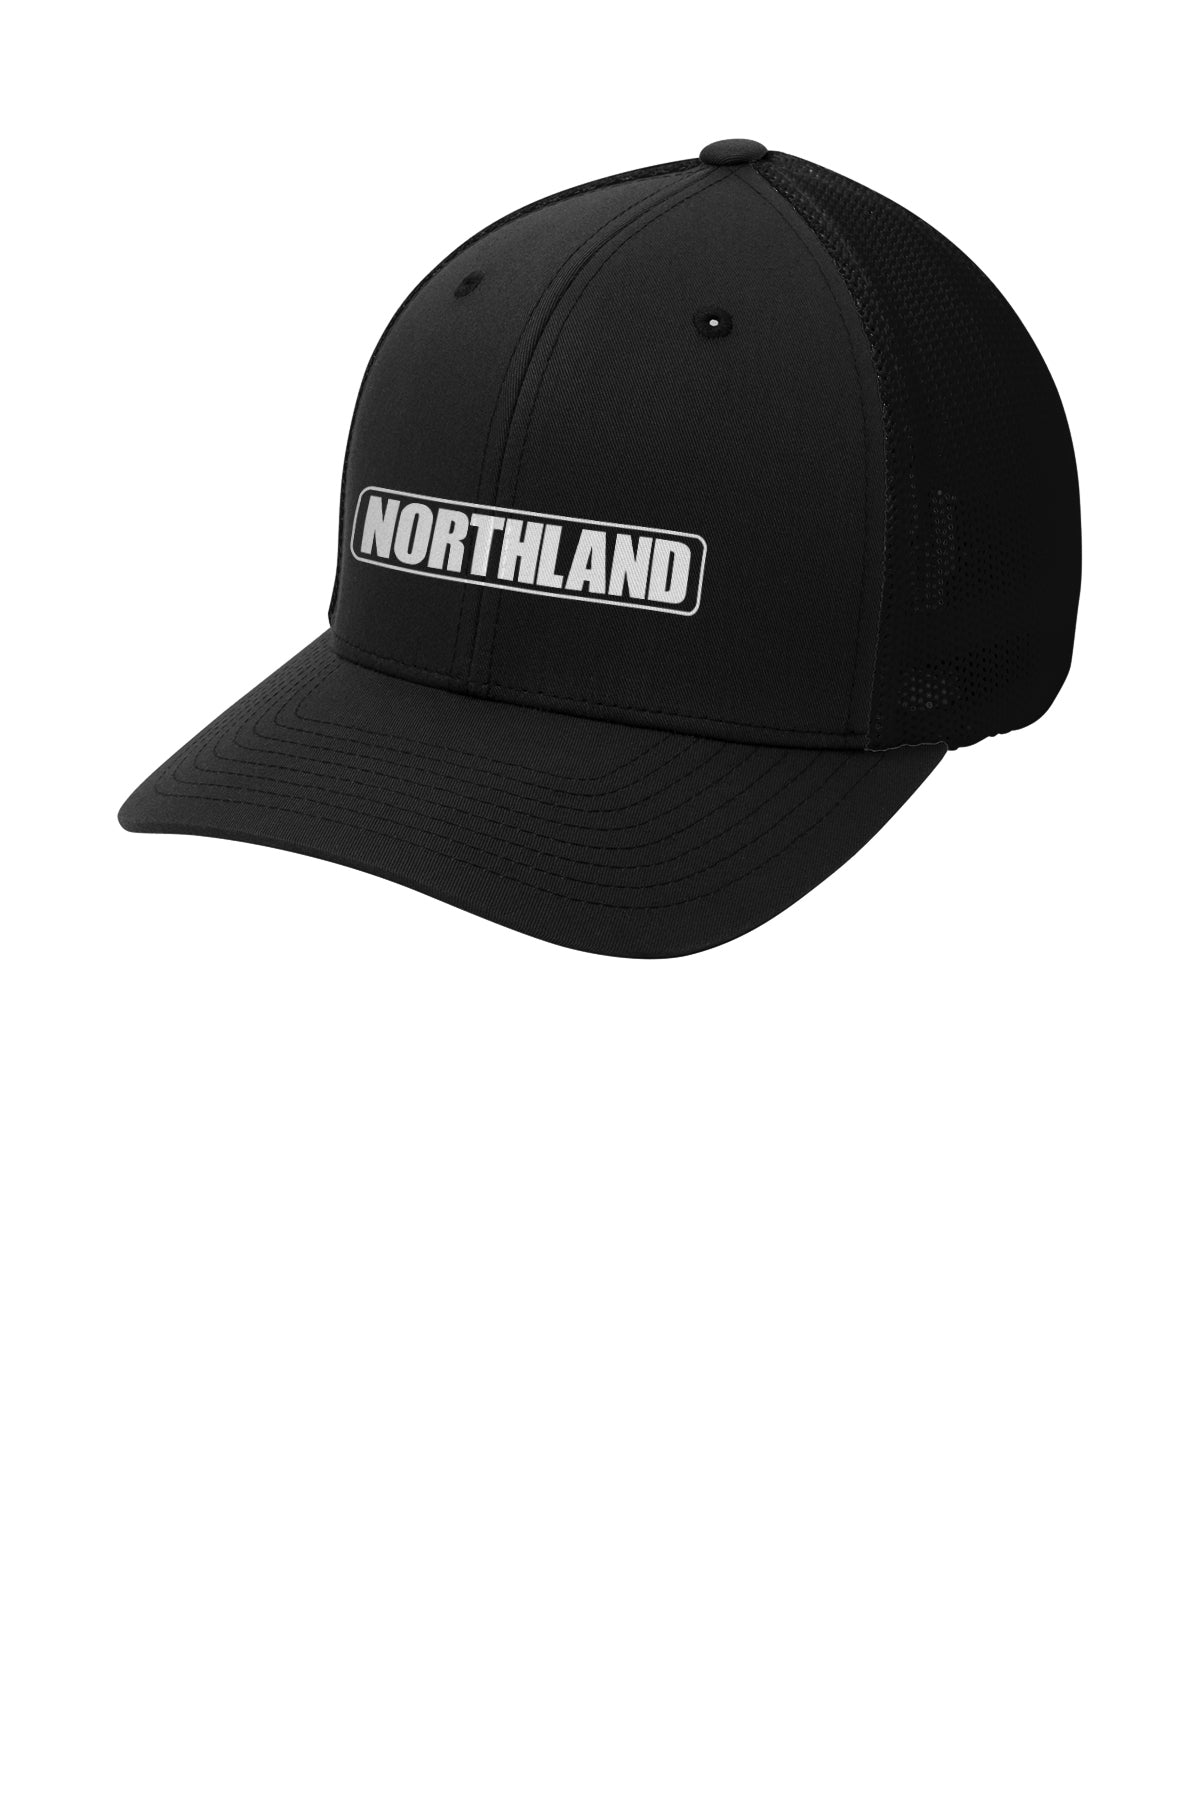 Northland Constructors Flexfit Mesh Back Cap